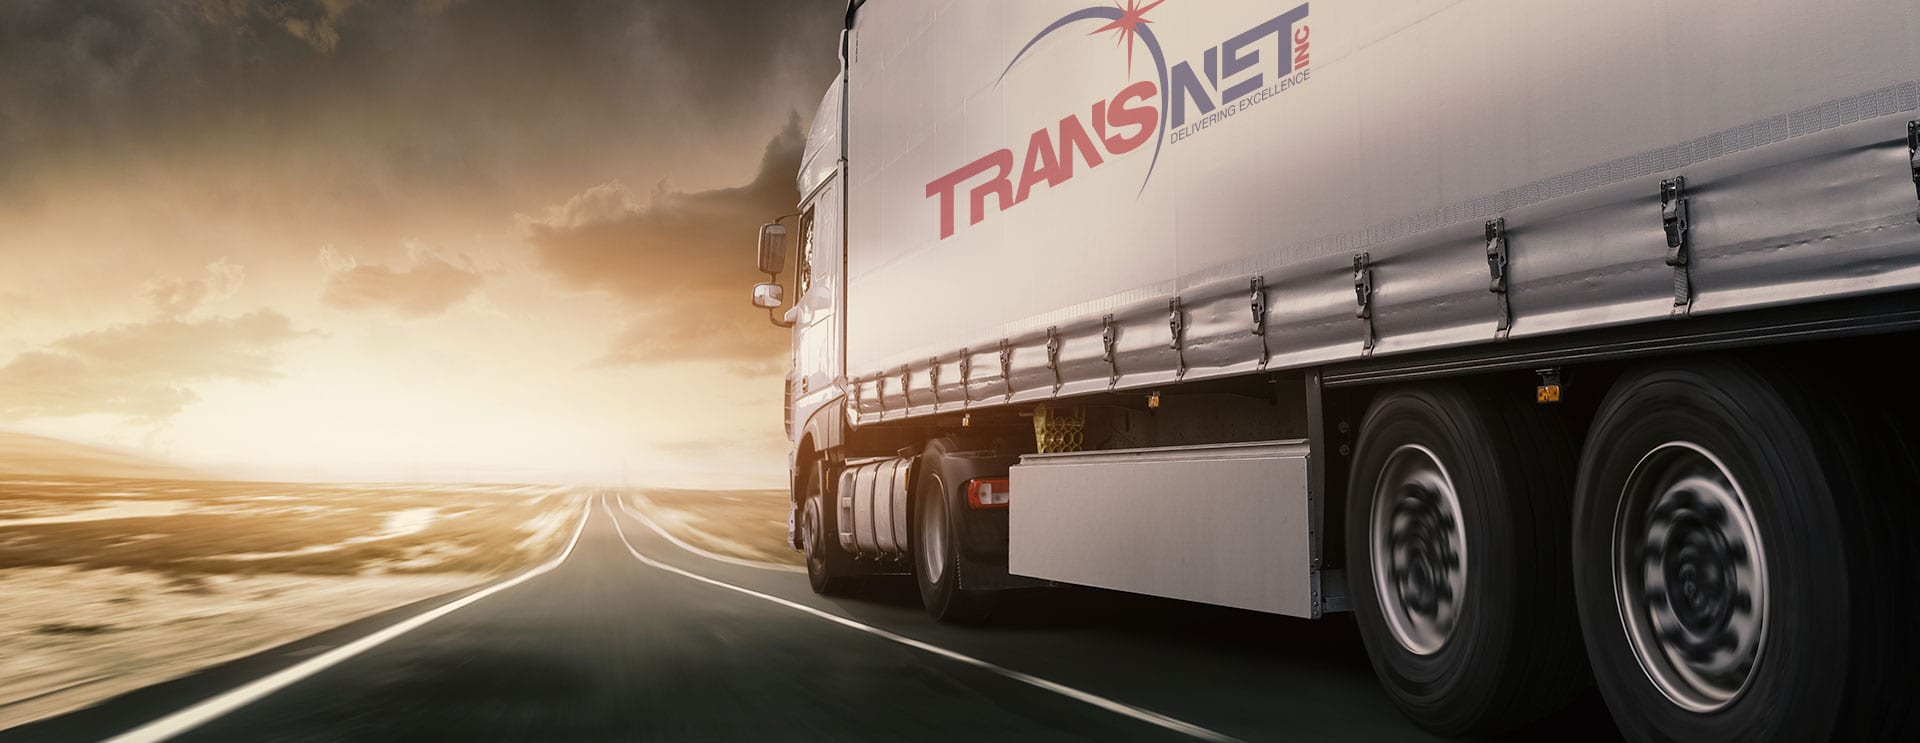 Transnet Logistics